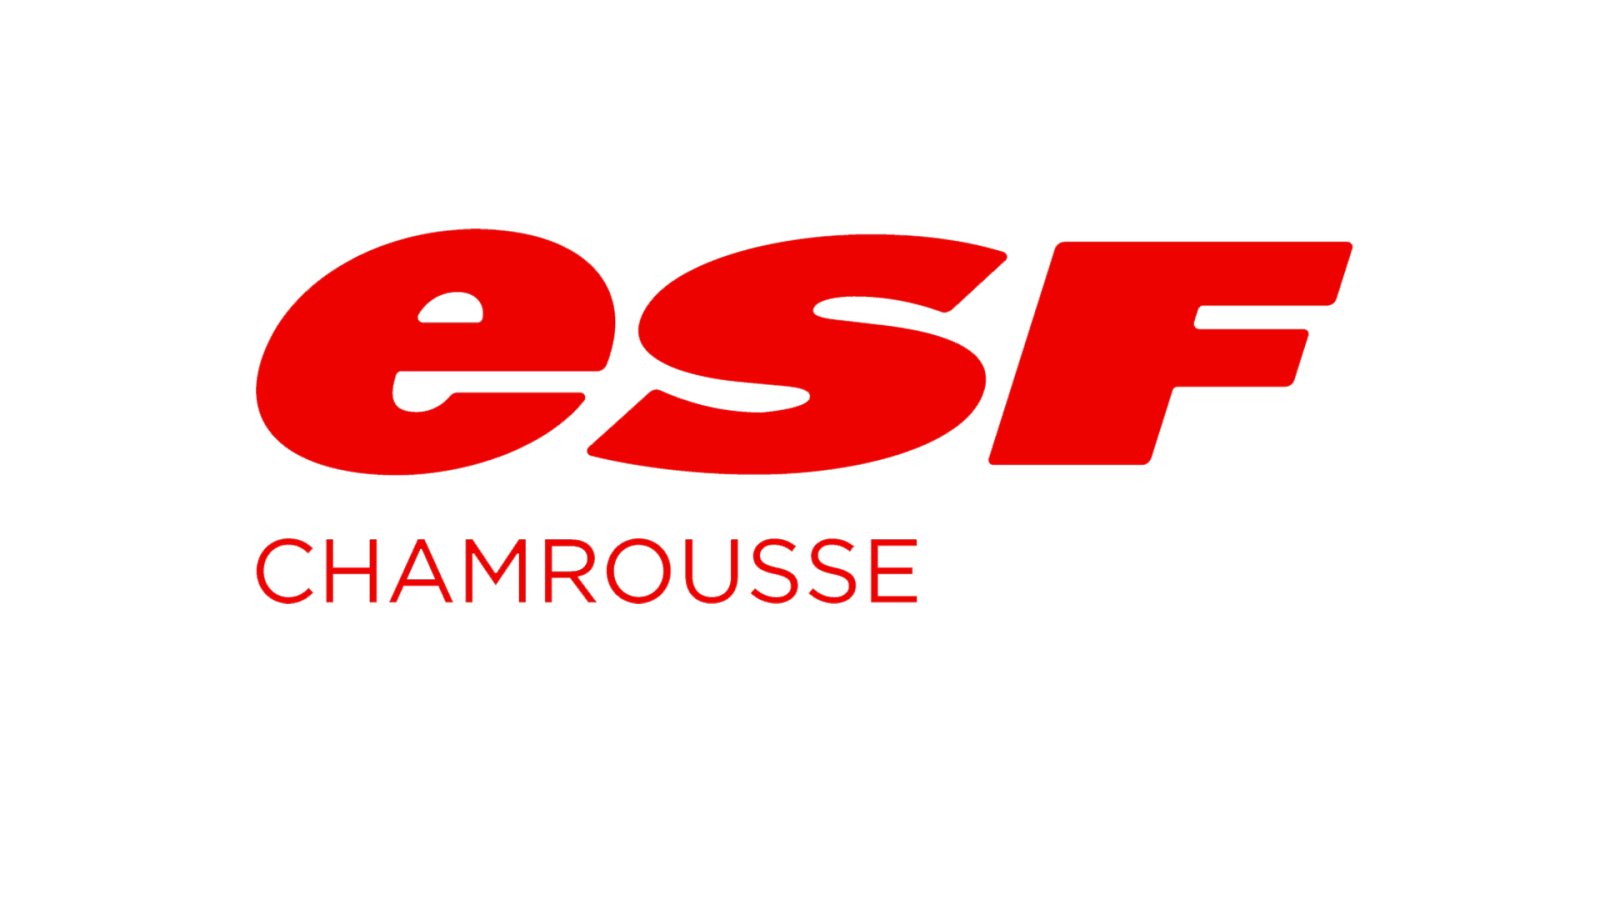 French Ski School (ESF) logo